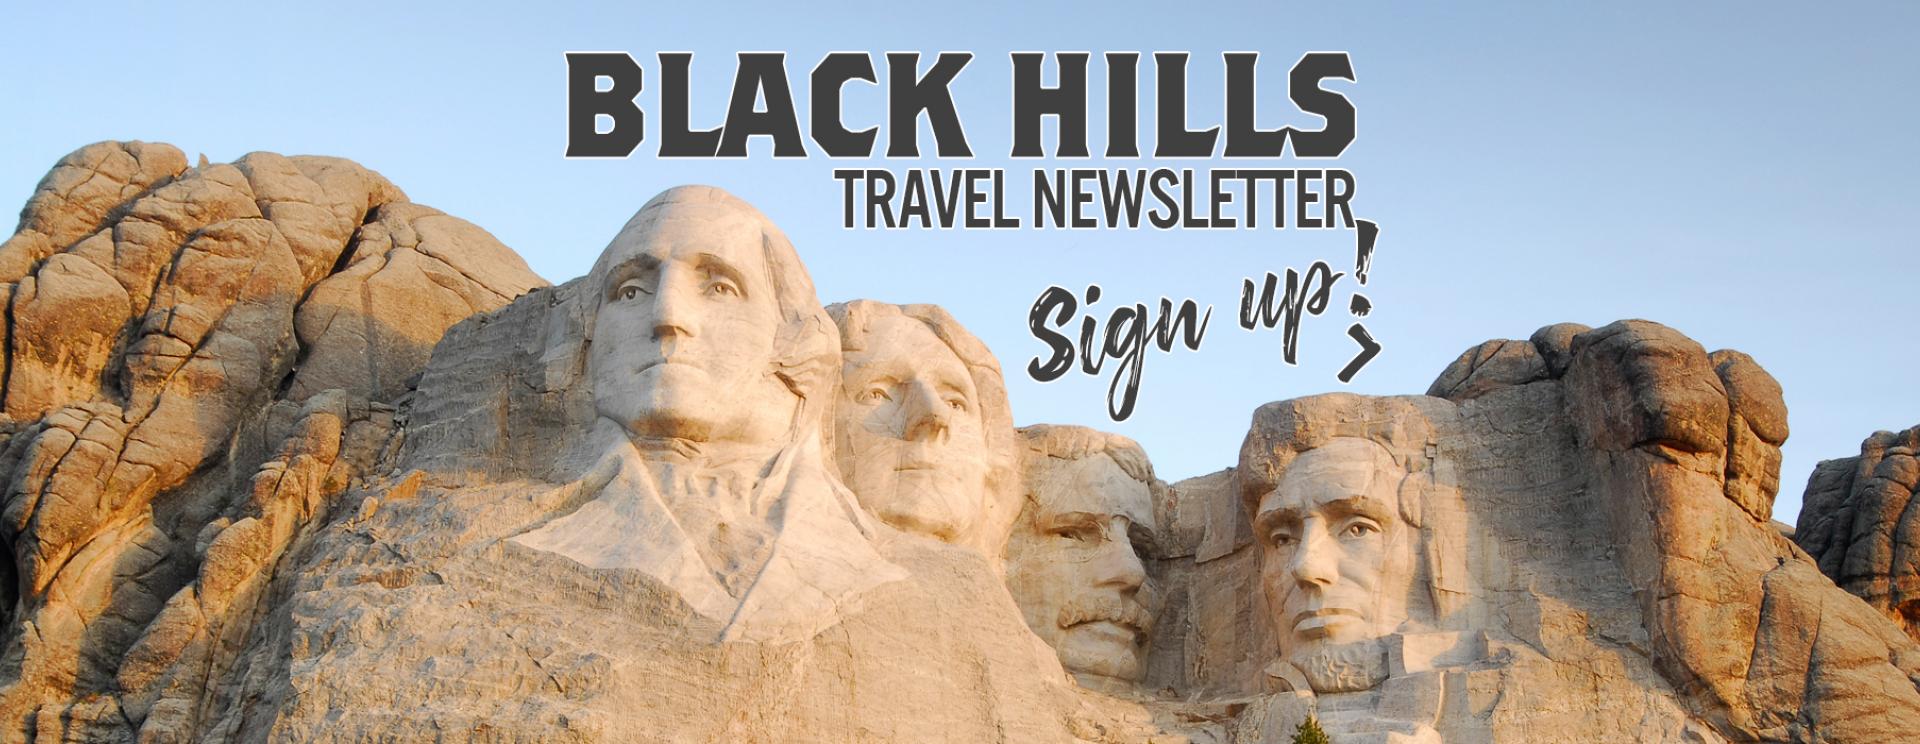 Black Hills Travel Newsletter